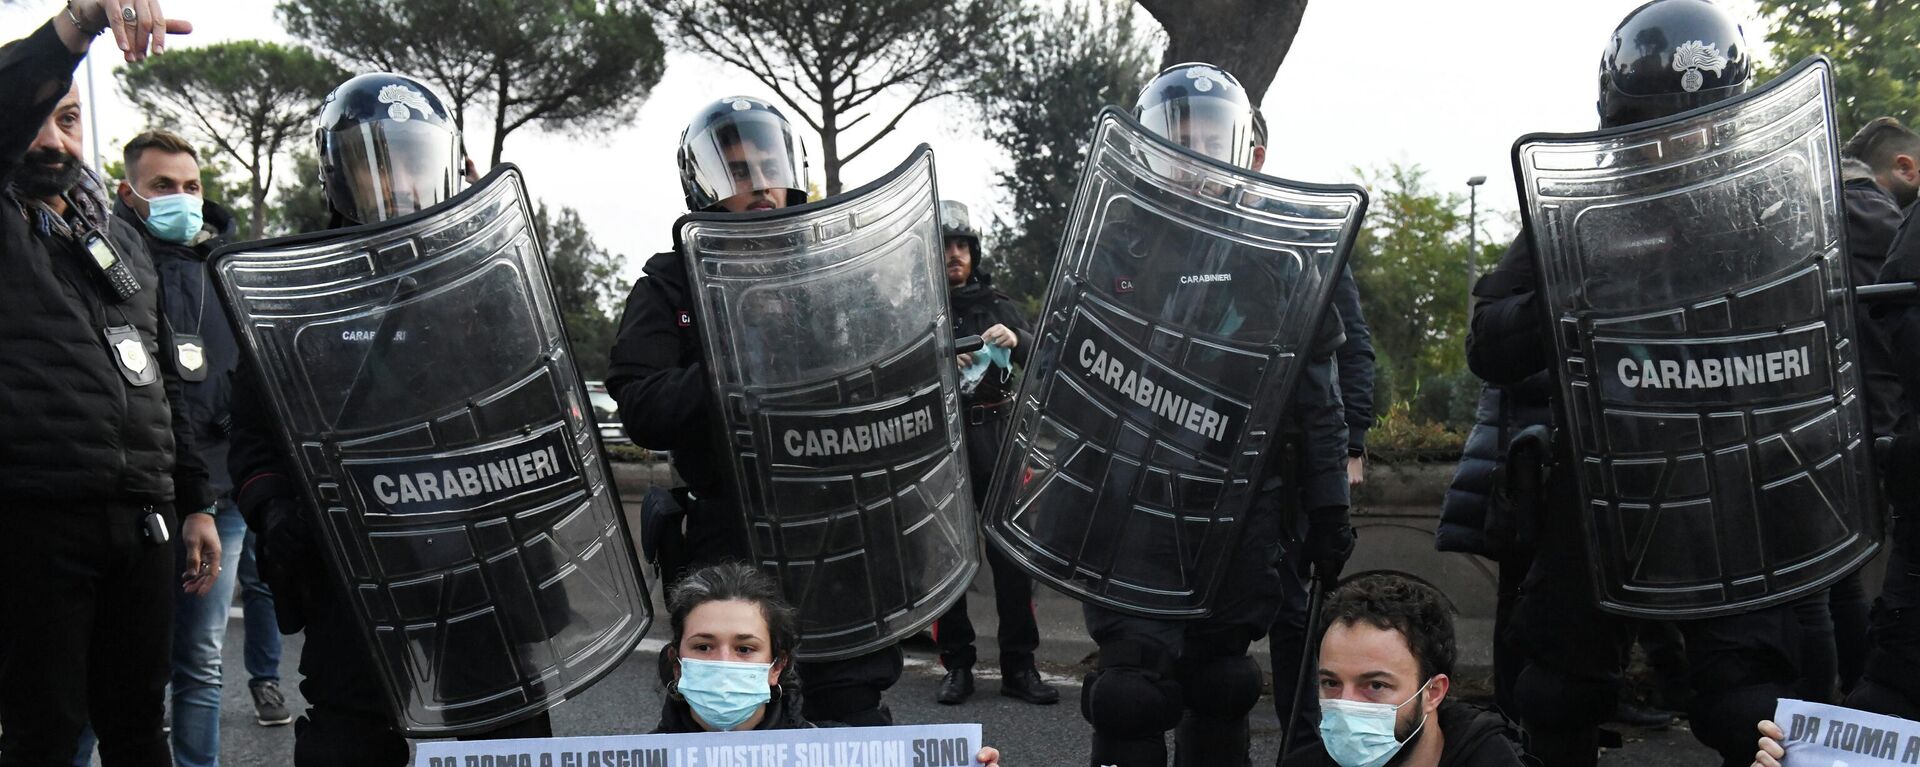 Agentes de Policía y manifestantes que protestan contra el G20 en Roma, Italia, el 30 de octubre de 2021 - Sputnik Mundo, 1920, 30.10.2021